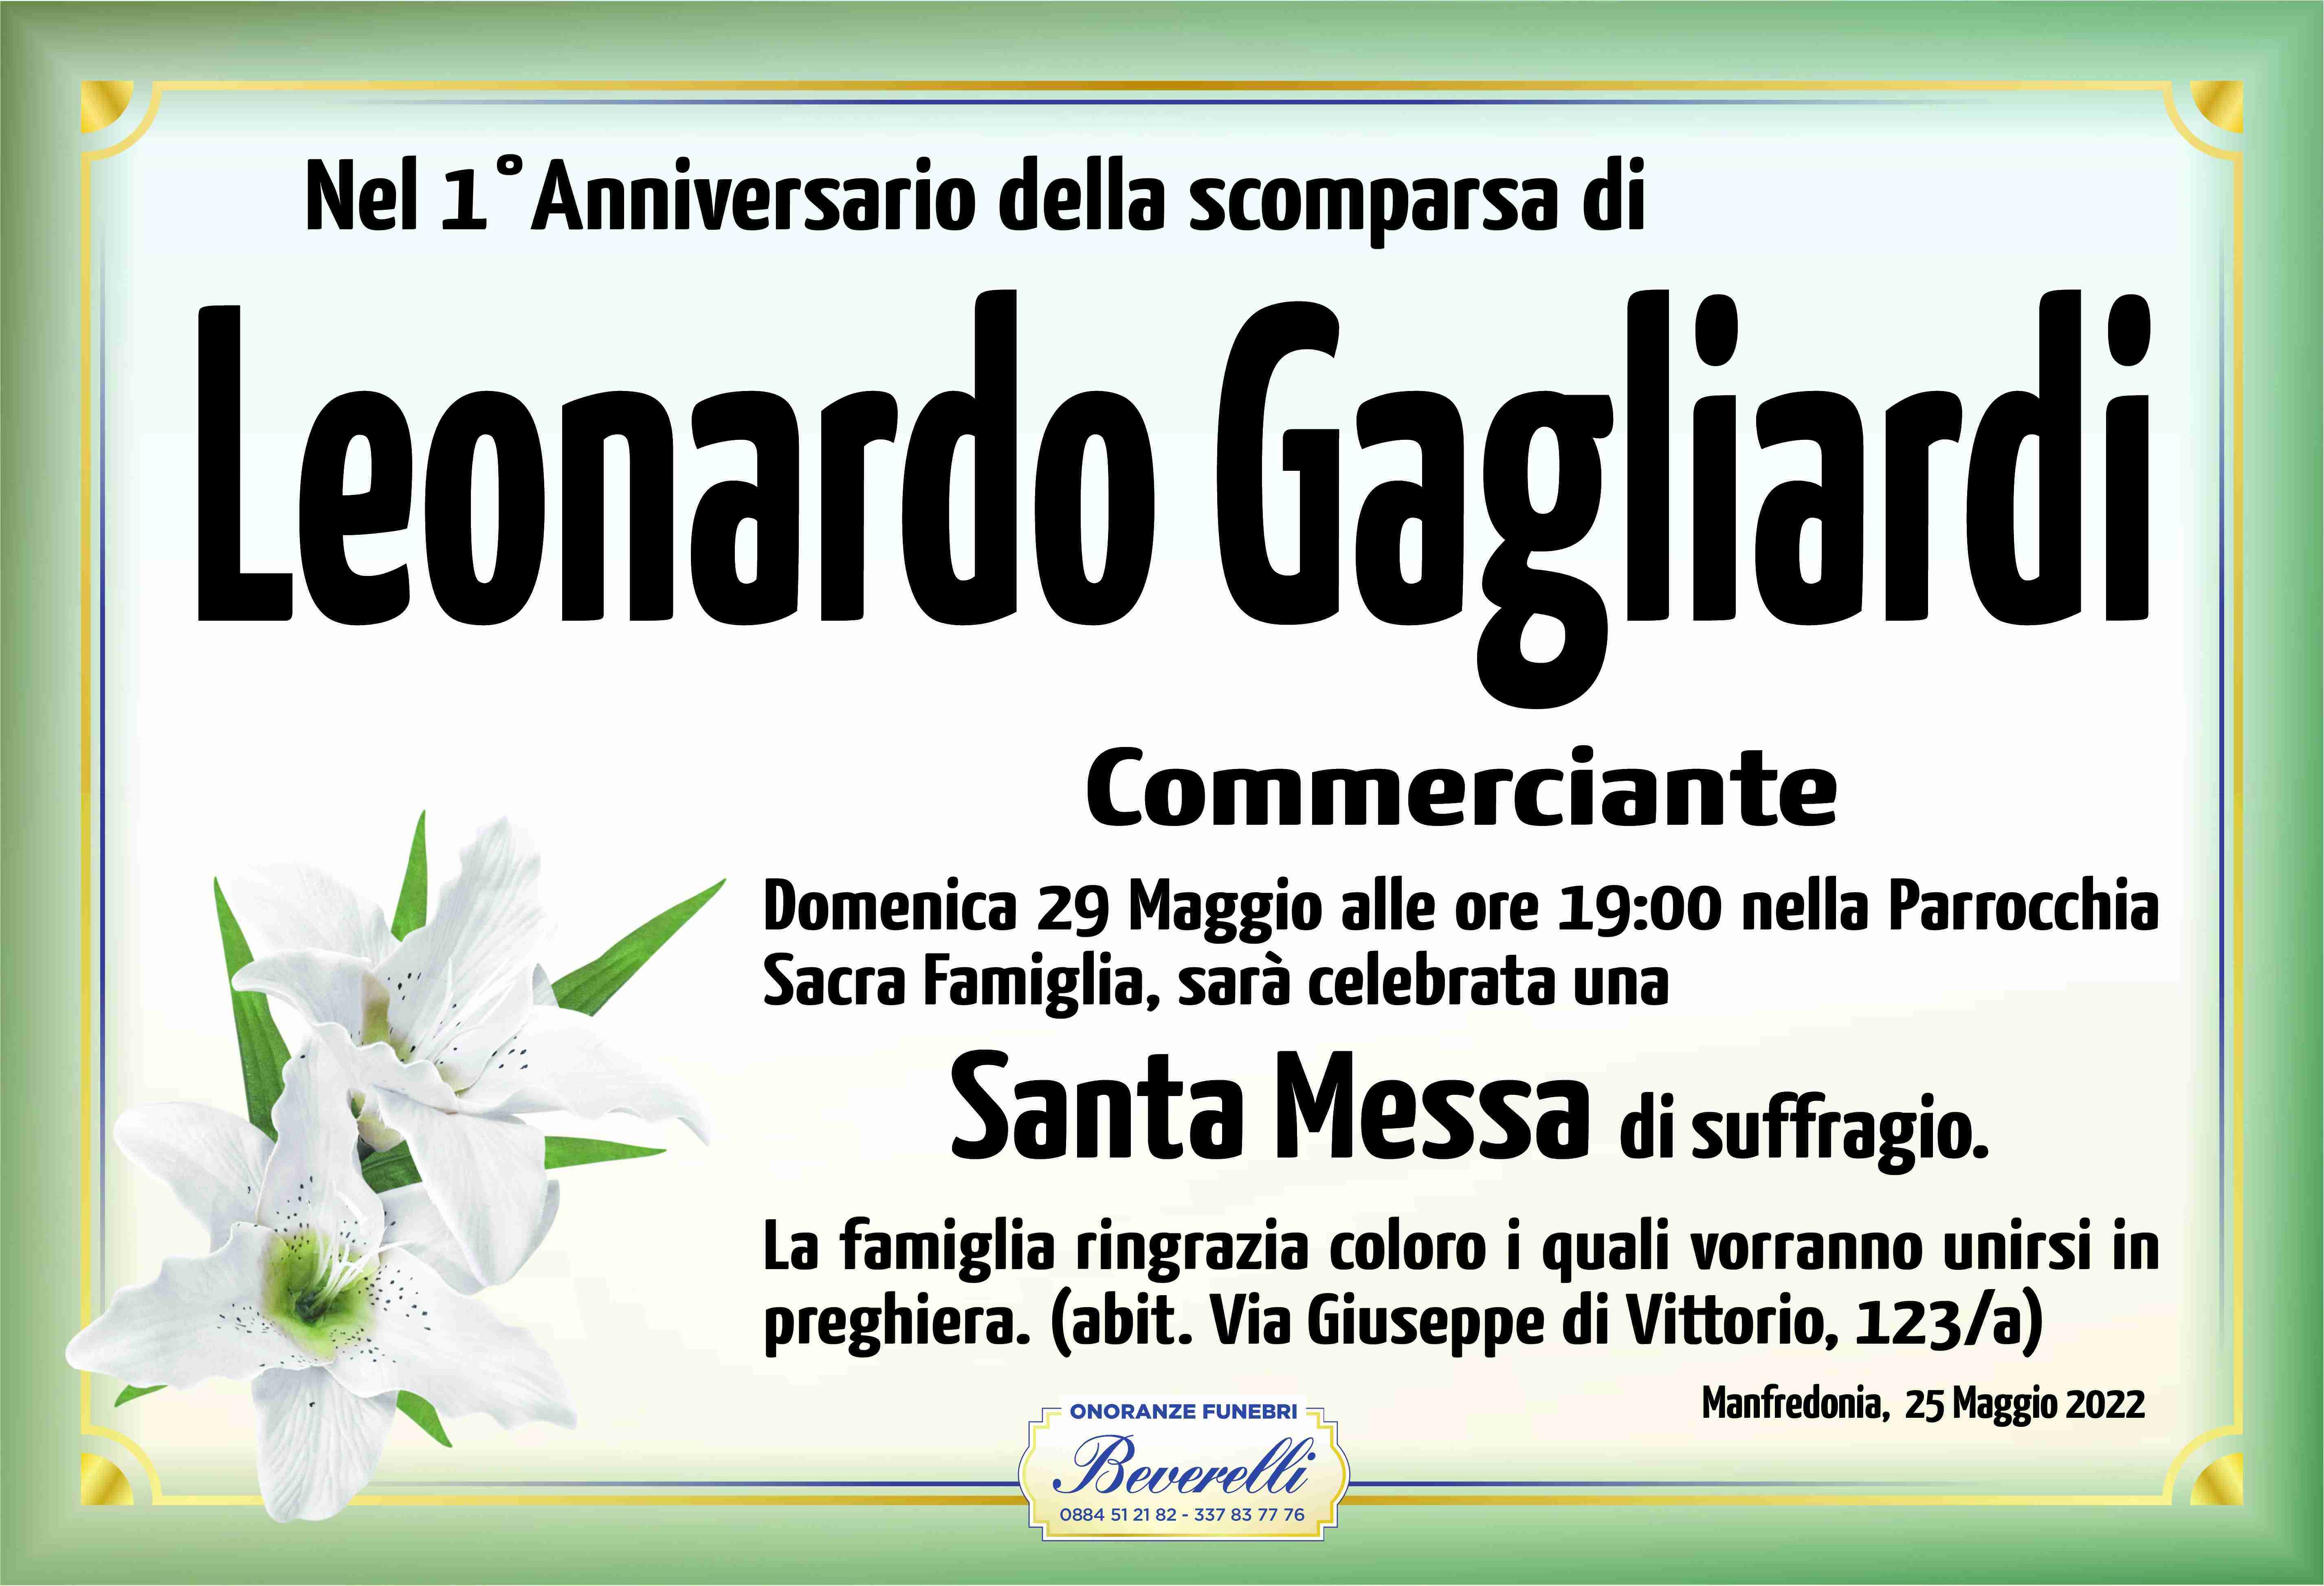 Leonardo Gagliardi